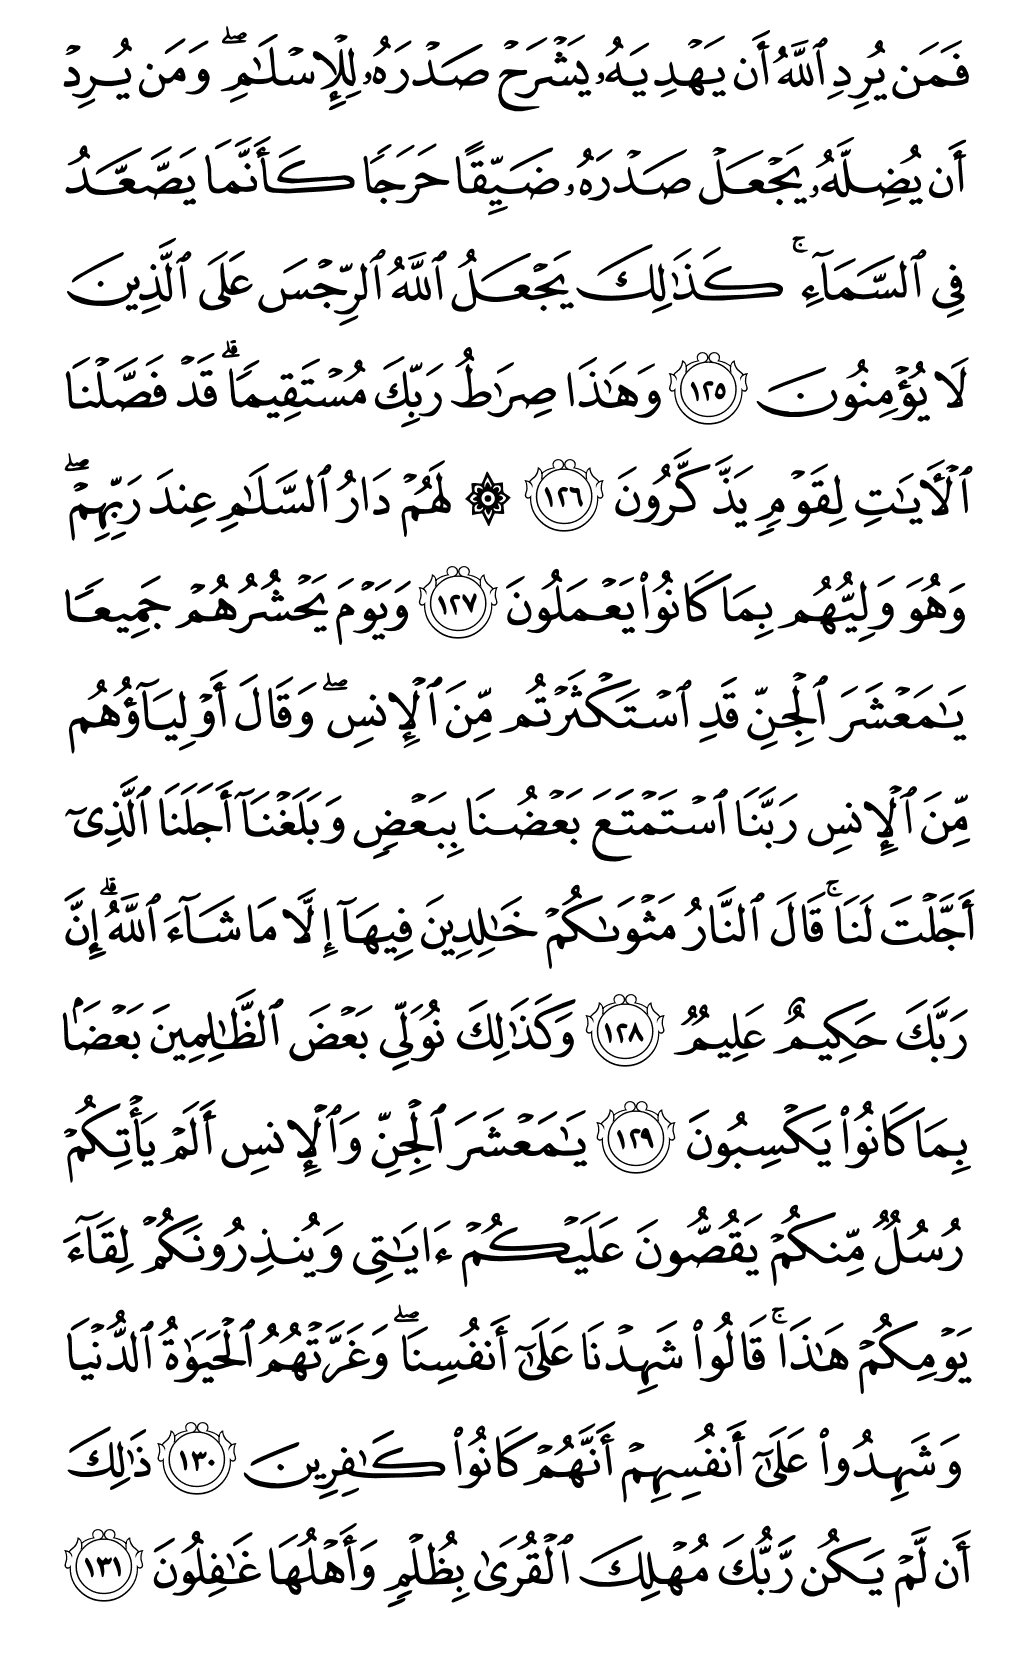 الصفحة رقم 144 من القرآن الكريم